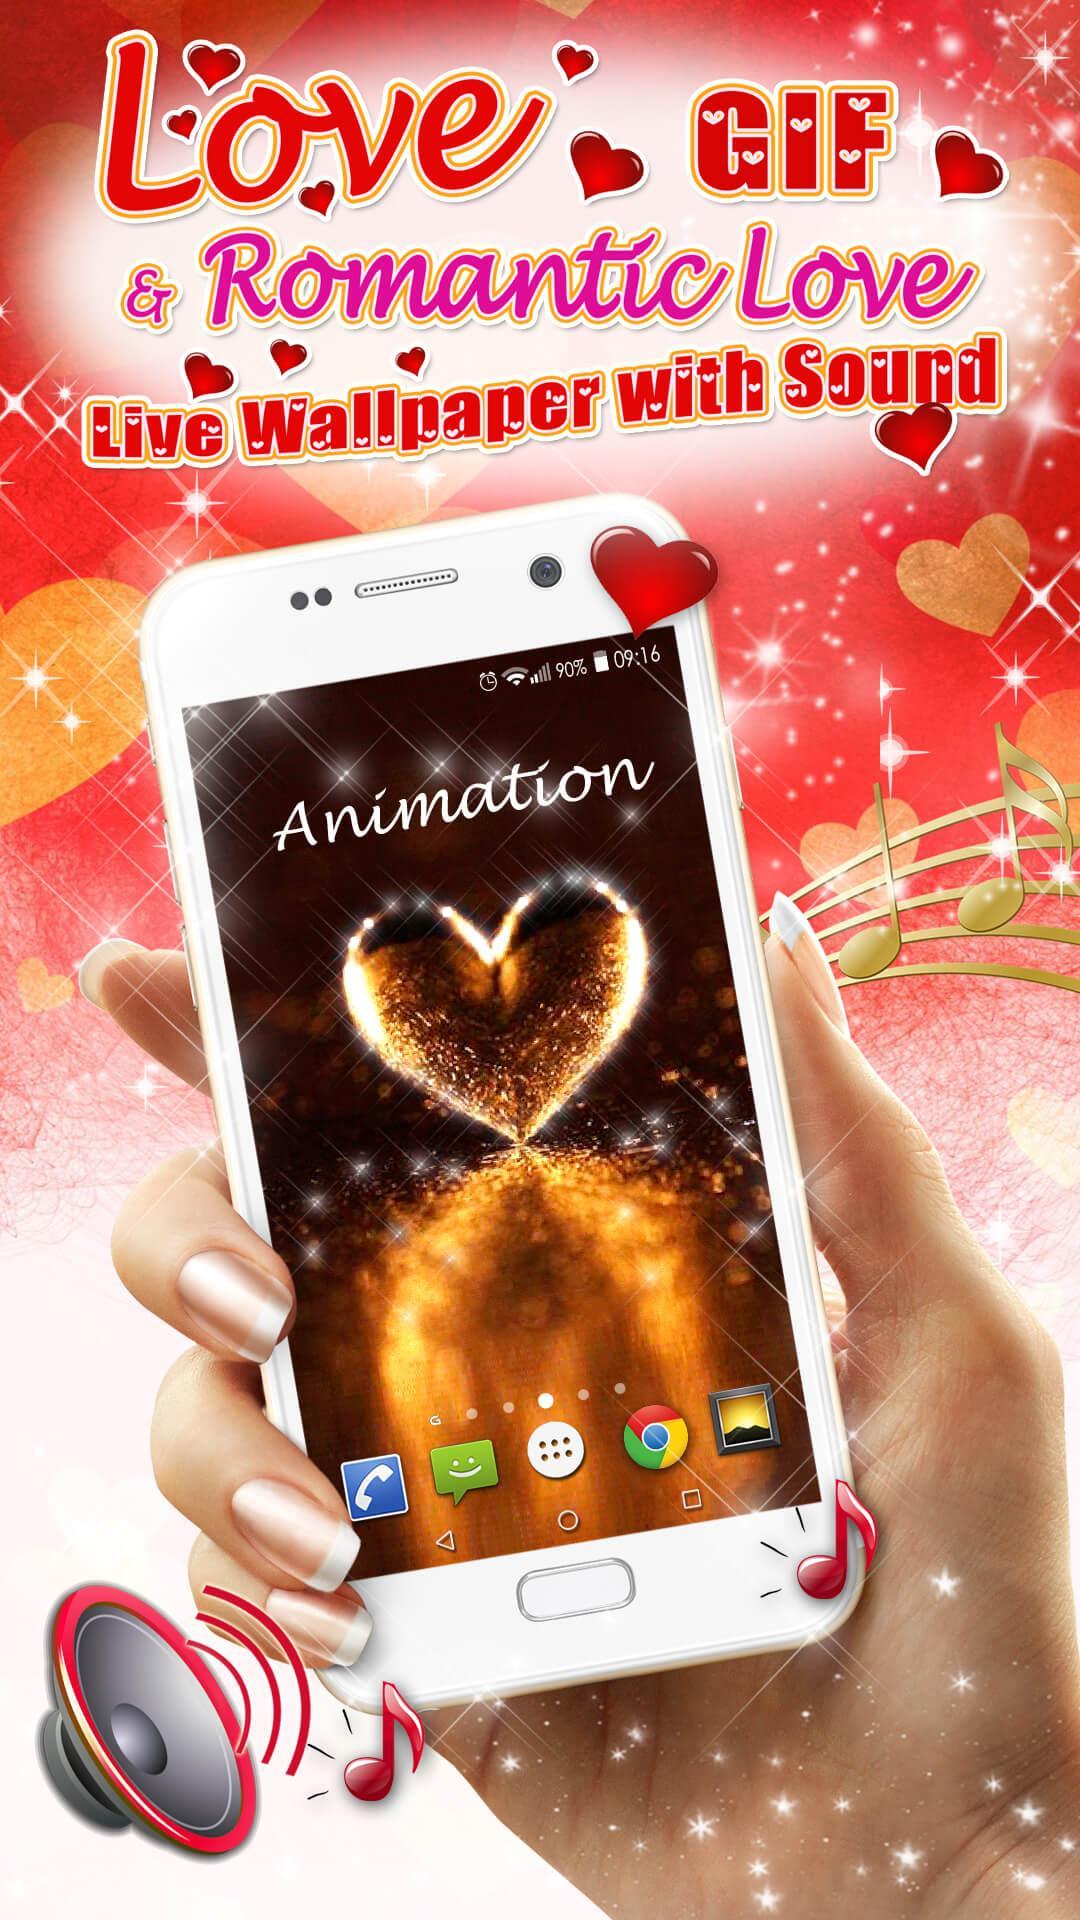 Android 用の 愛gif ロマンチックな壁紙 Apk をダウンロード